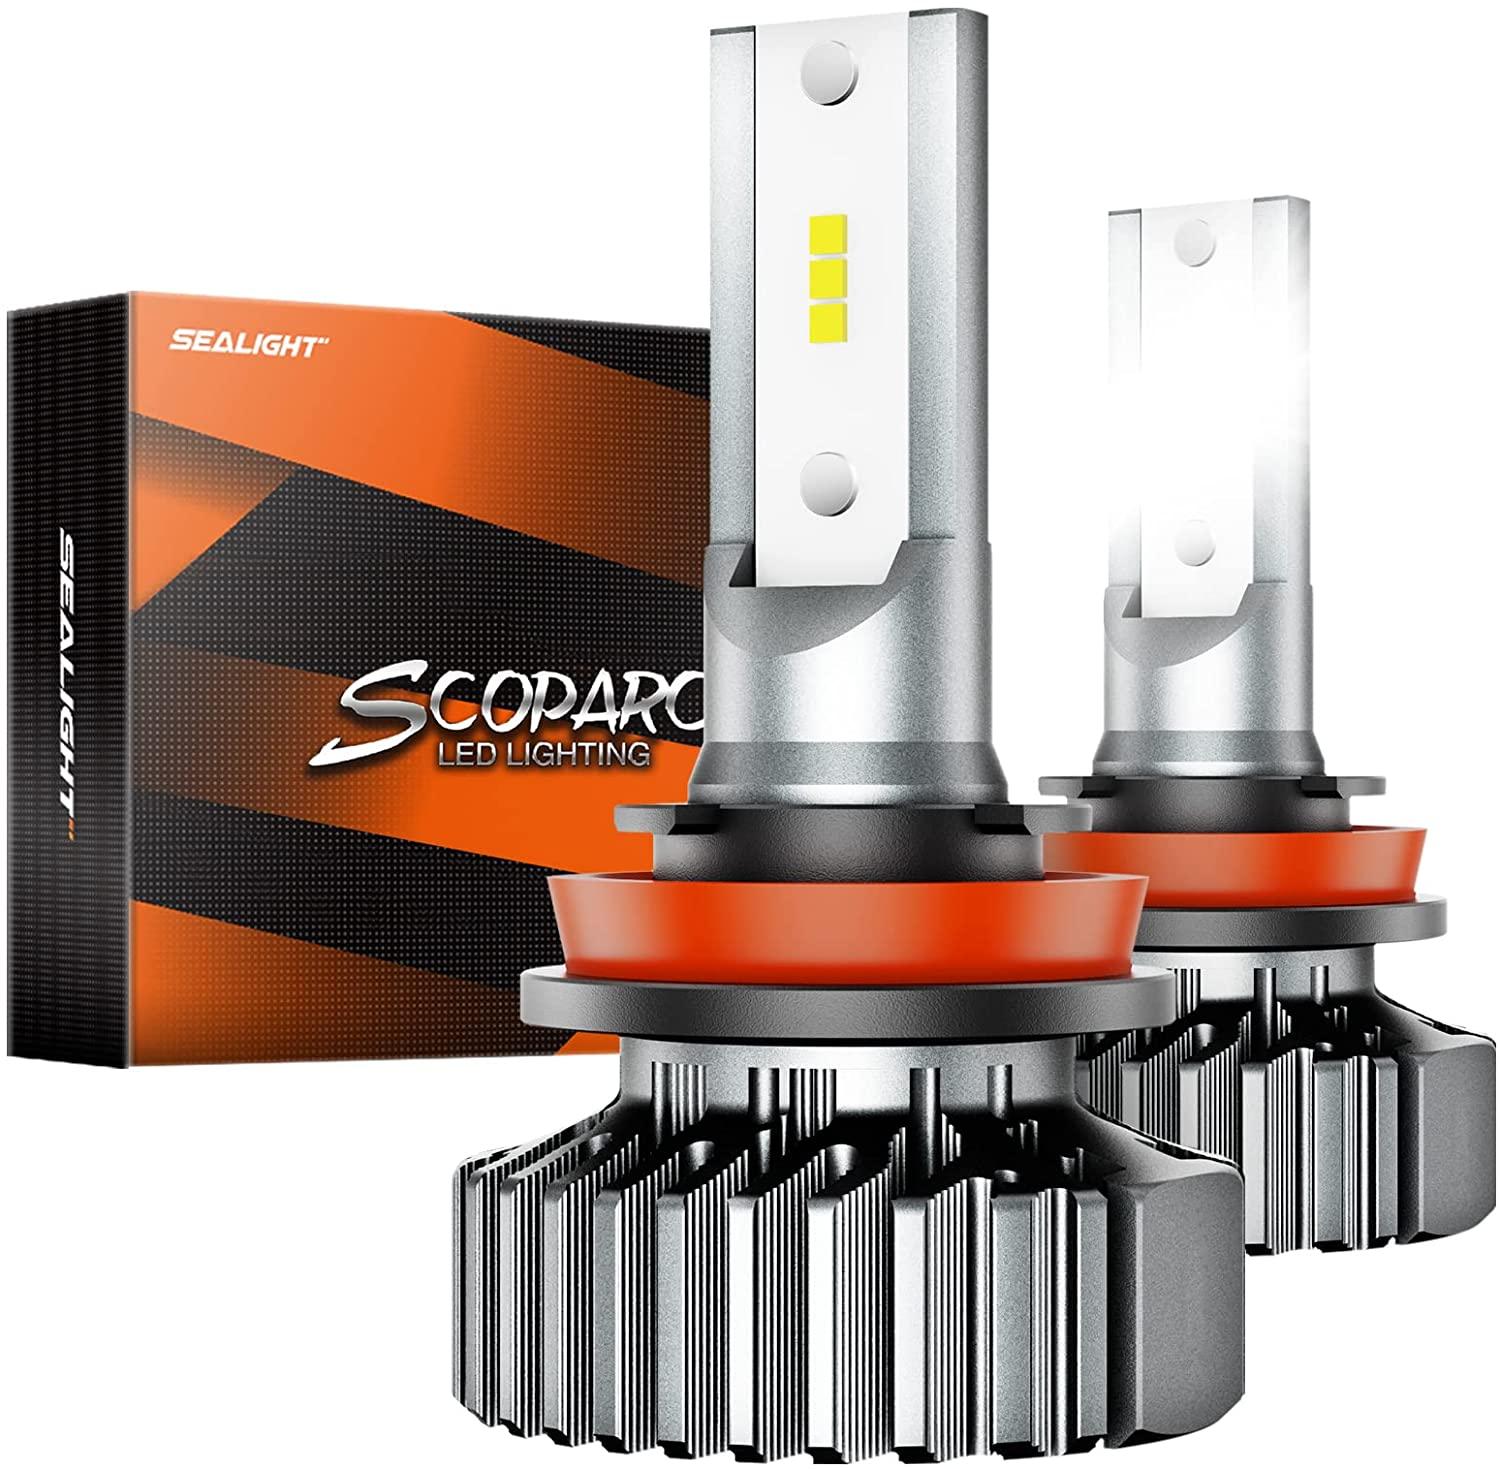 SEALIGHT Scoparc S1 H11/H8/H9 LED Headlamp Bulbs